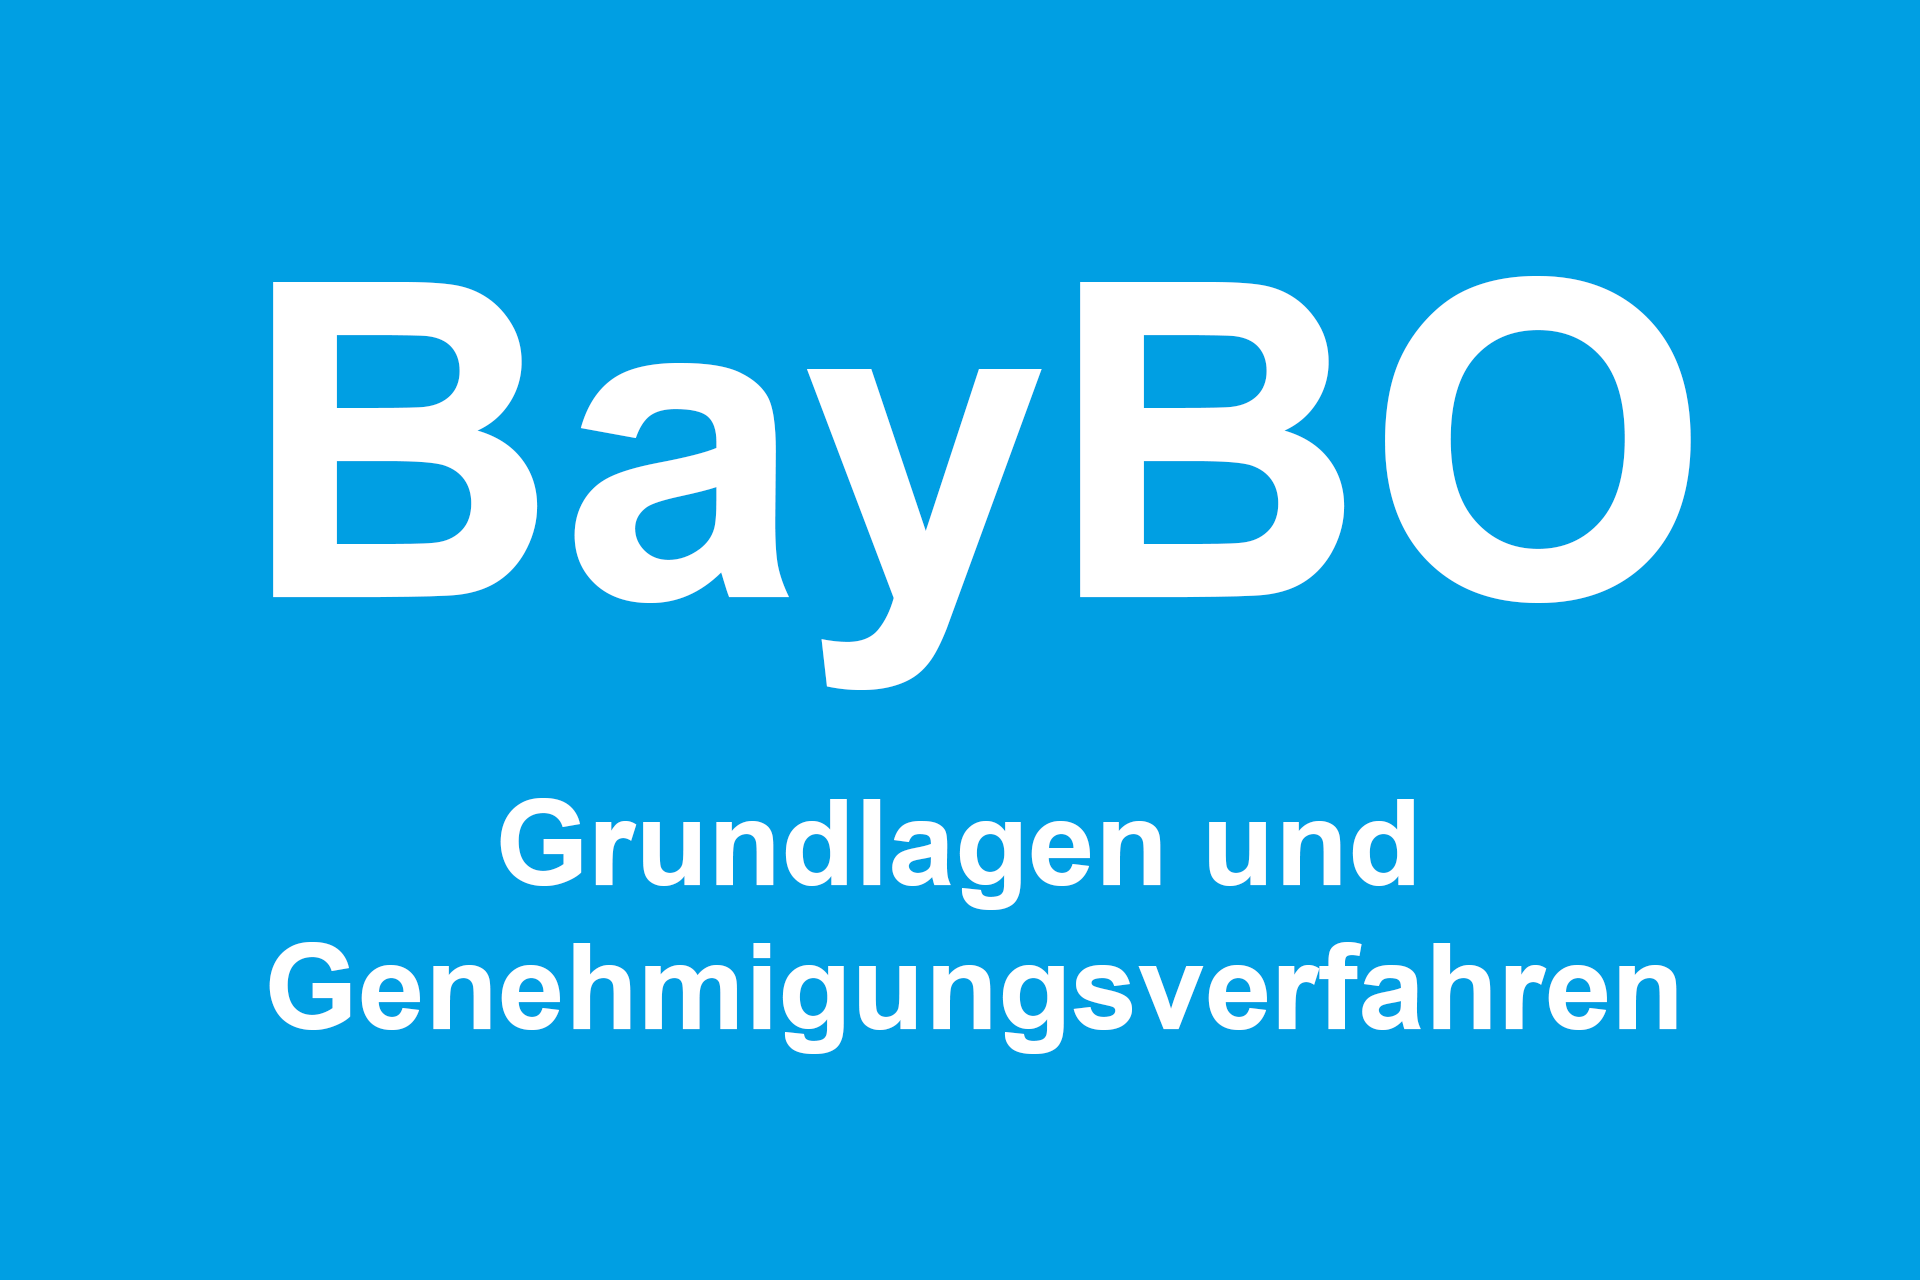 Bayerische Bauordnung - BayBO: Grundlagen und Genehmigungsverfahren